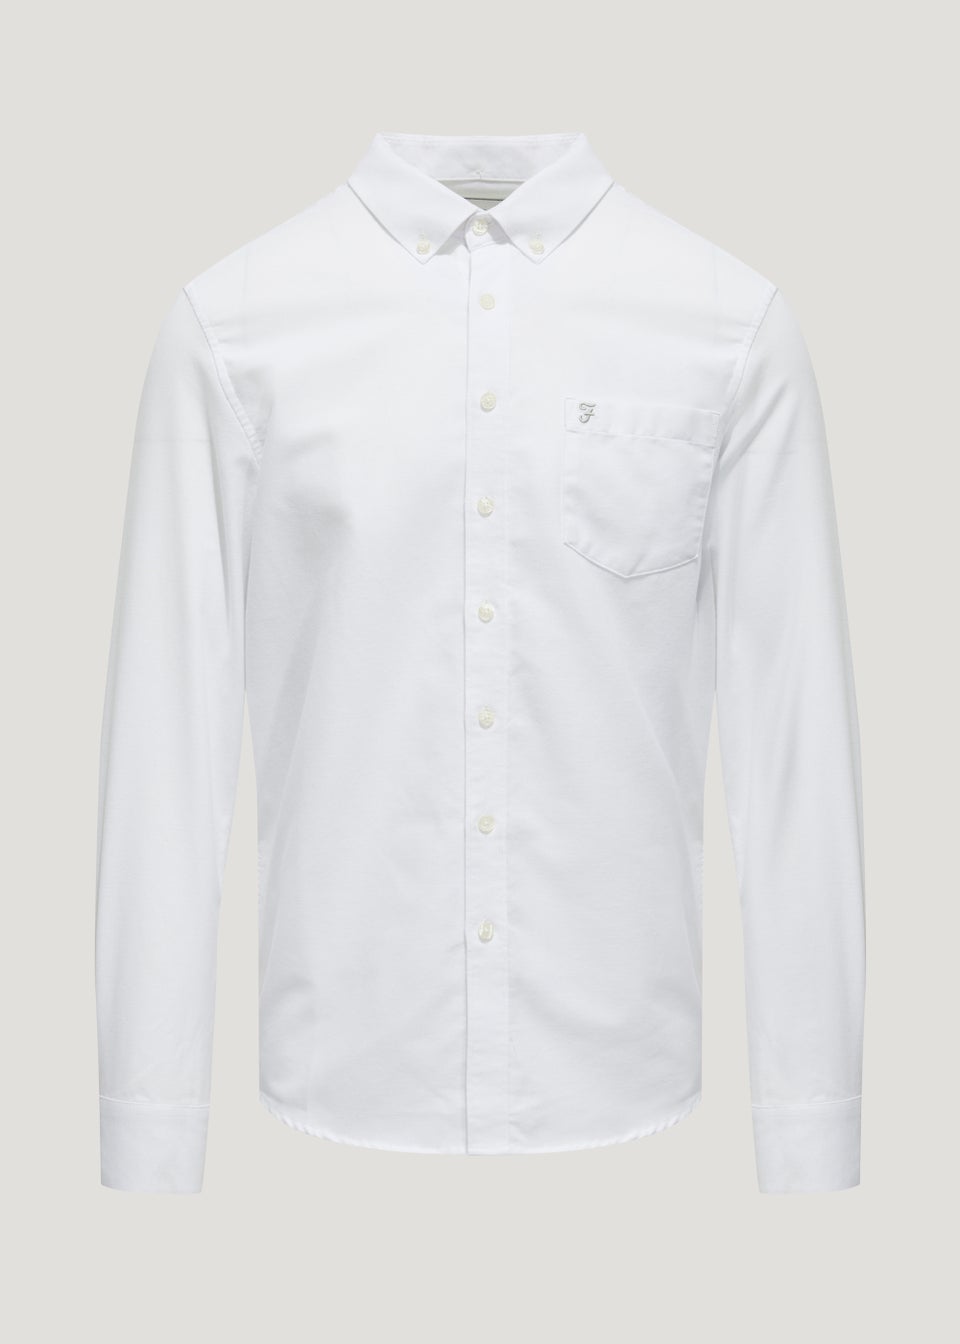 Farah Drayton White Shirt